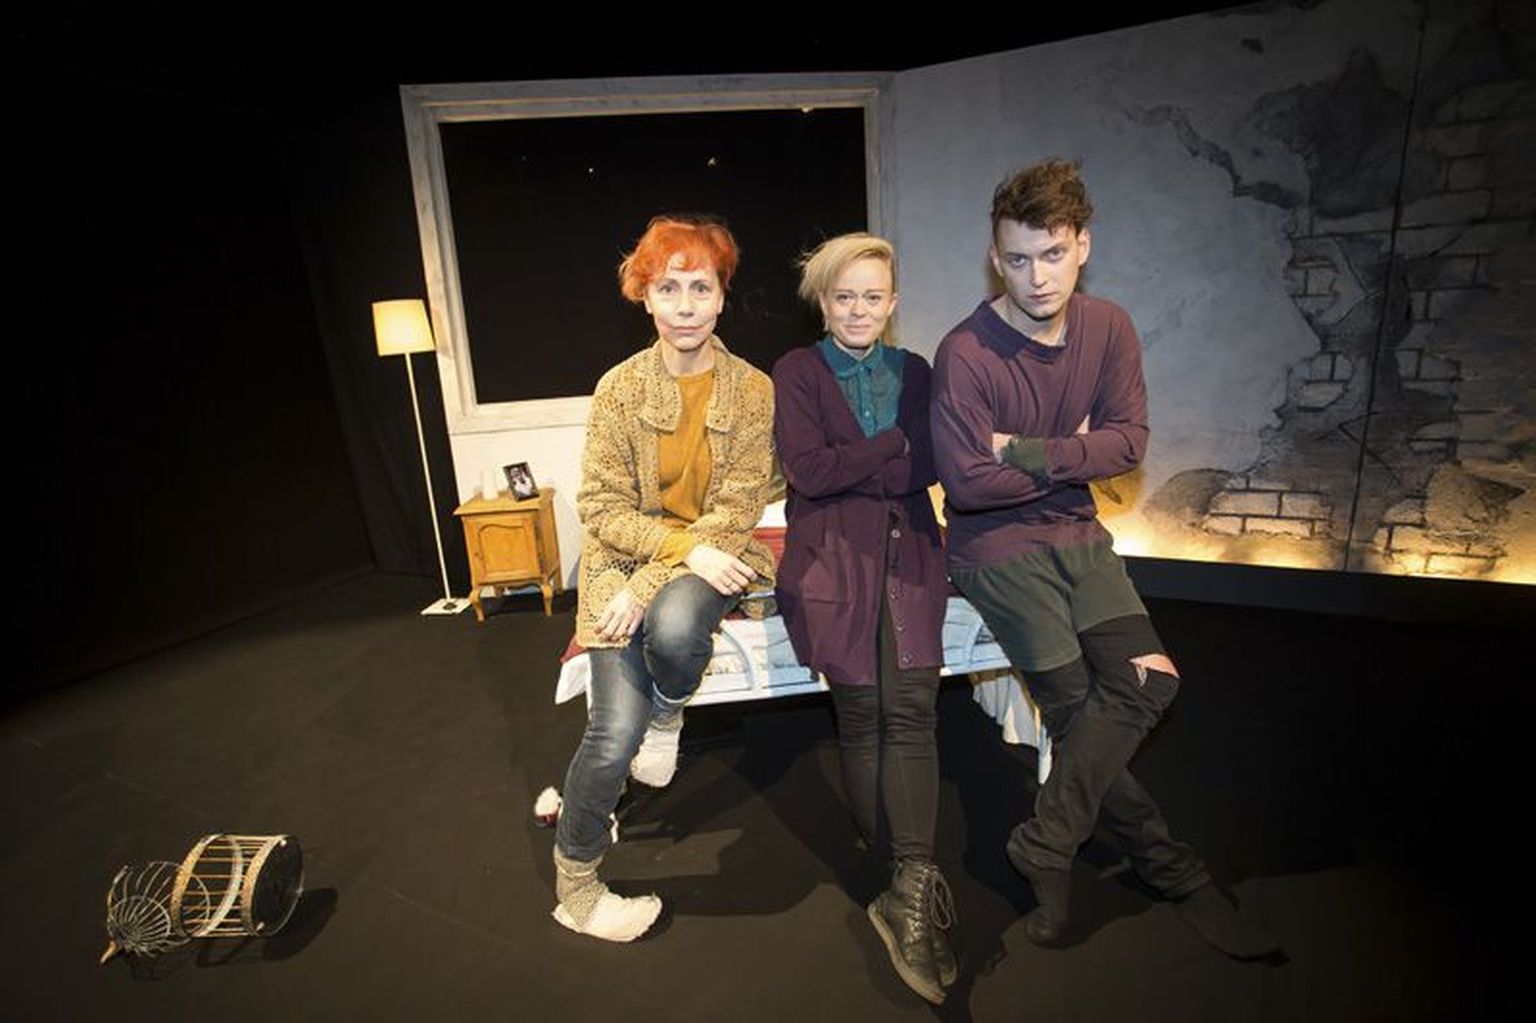 Rakvere teatris täna esietenduvas loos “See kõik on tema” on ema ja poja vahel ületamatu sein. Tiina Mälberg (vasakult), Helen Rekkor ja Imre Õunapuu lapivad kokku armastuse kilde.